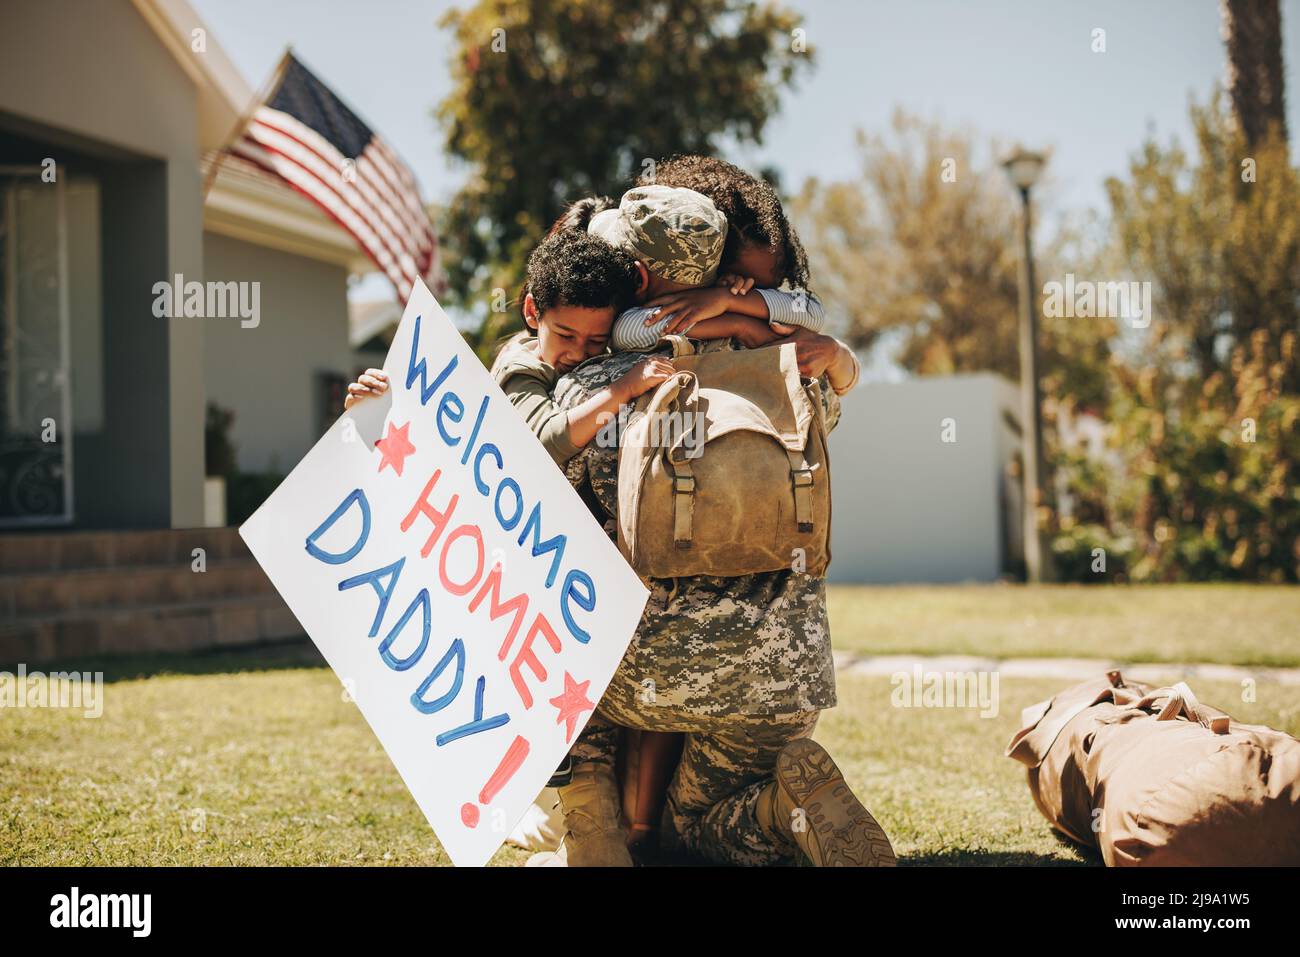 Un militaire se réunirait avec sa famille après son retour de l'armée. Un soldat américain embrassant sa femme et ses enfants à l'extérieur. Militaire homme recevant Banque D'Images